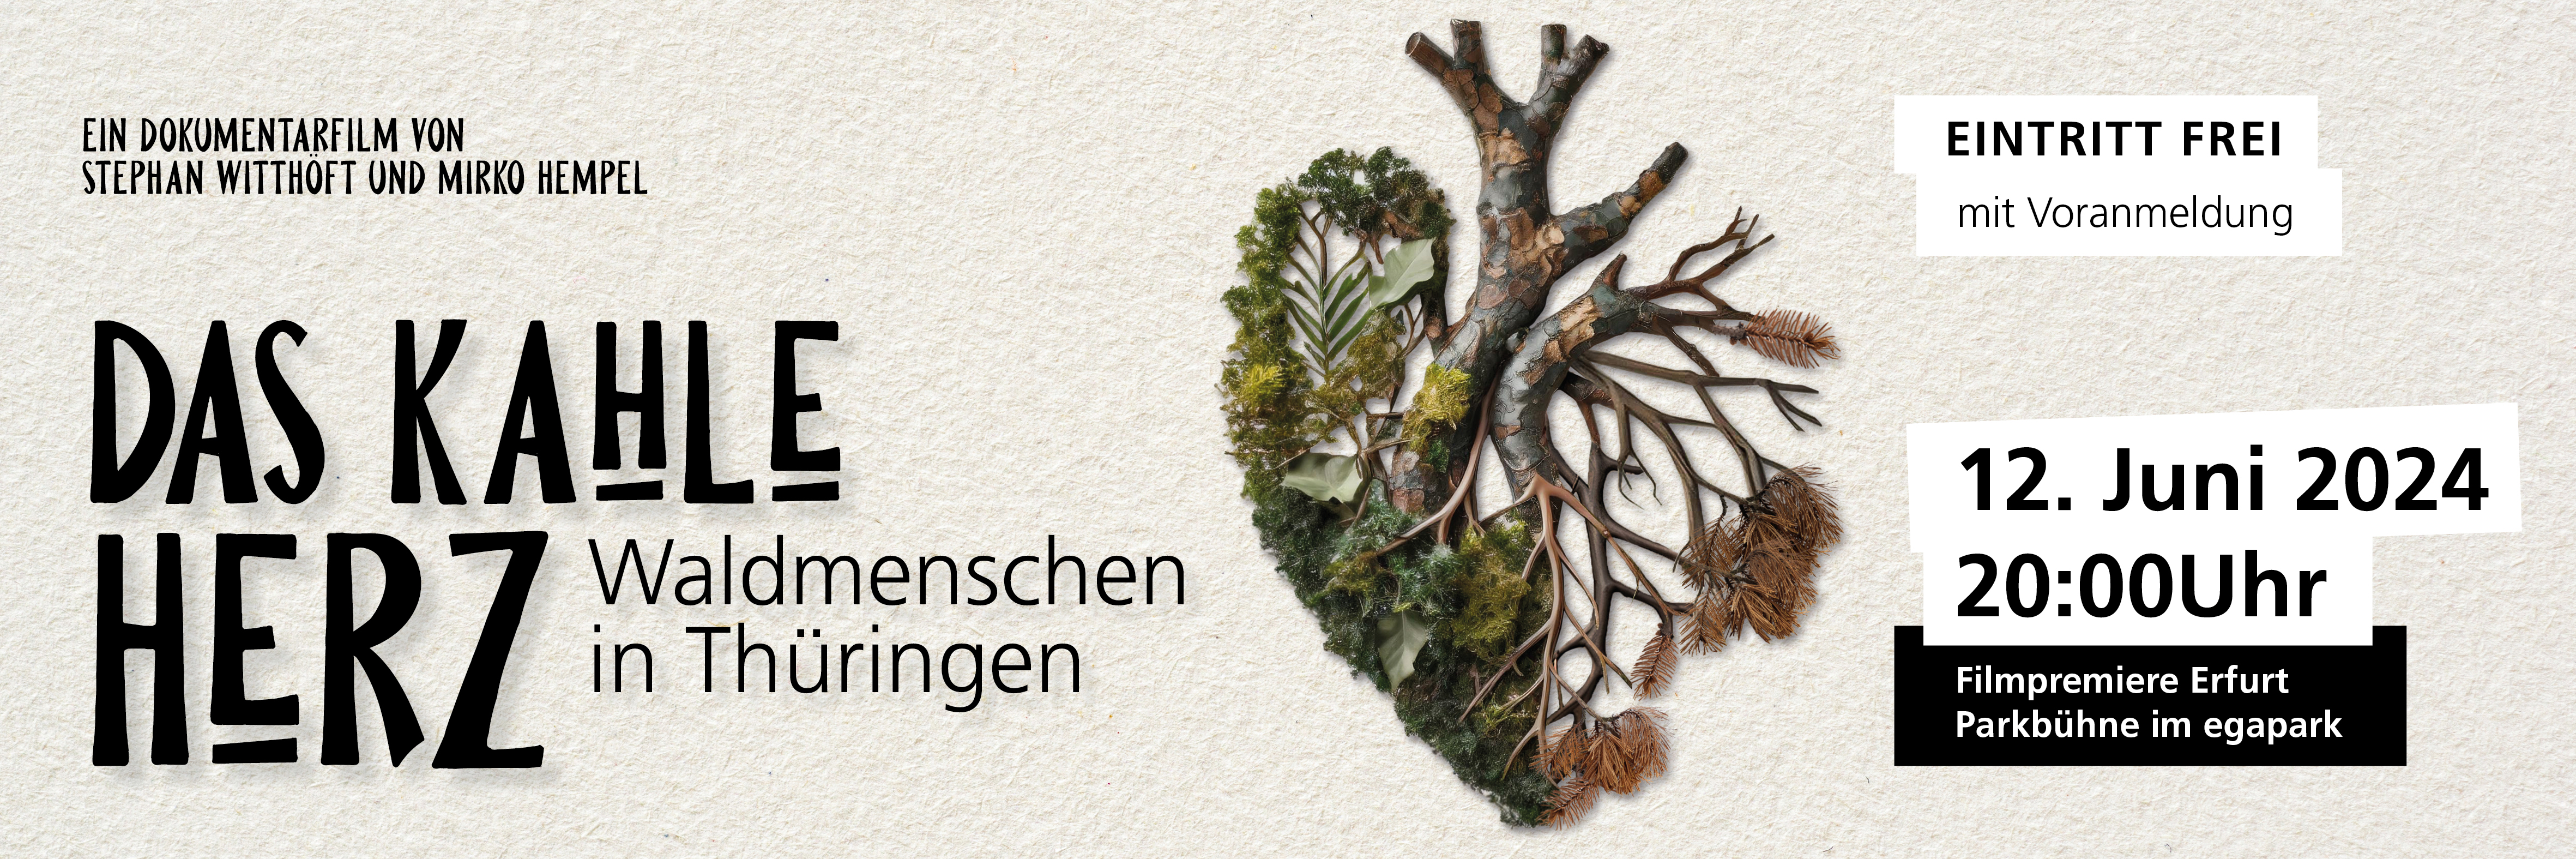 Deutschlandpremiere: Das kahle Herz – Waldmenschen in Thüringen